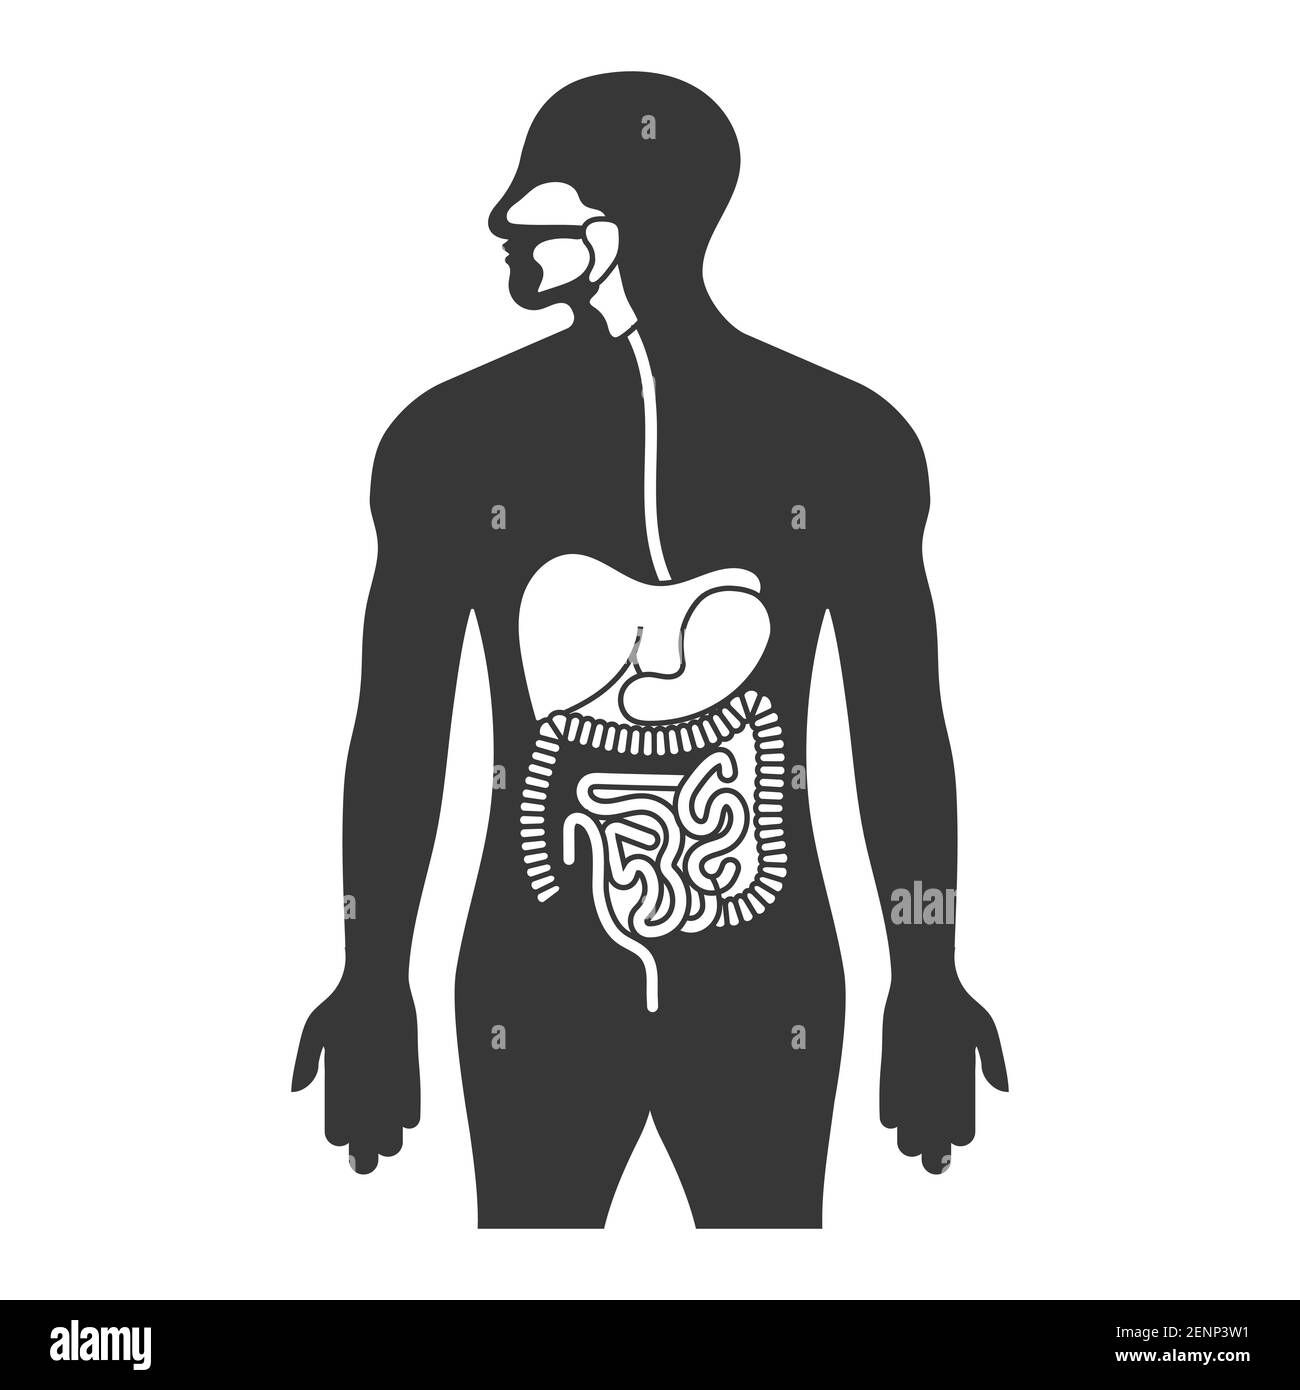 Tubo digestivo humano o sistema digestivo icono plano para aplicaciones y sitios web Ilustración del Vector